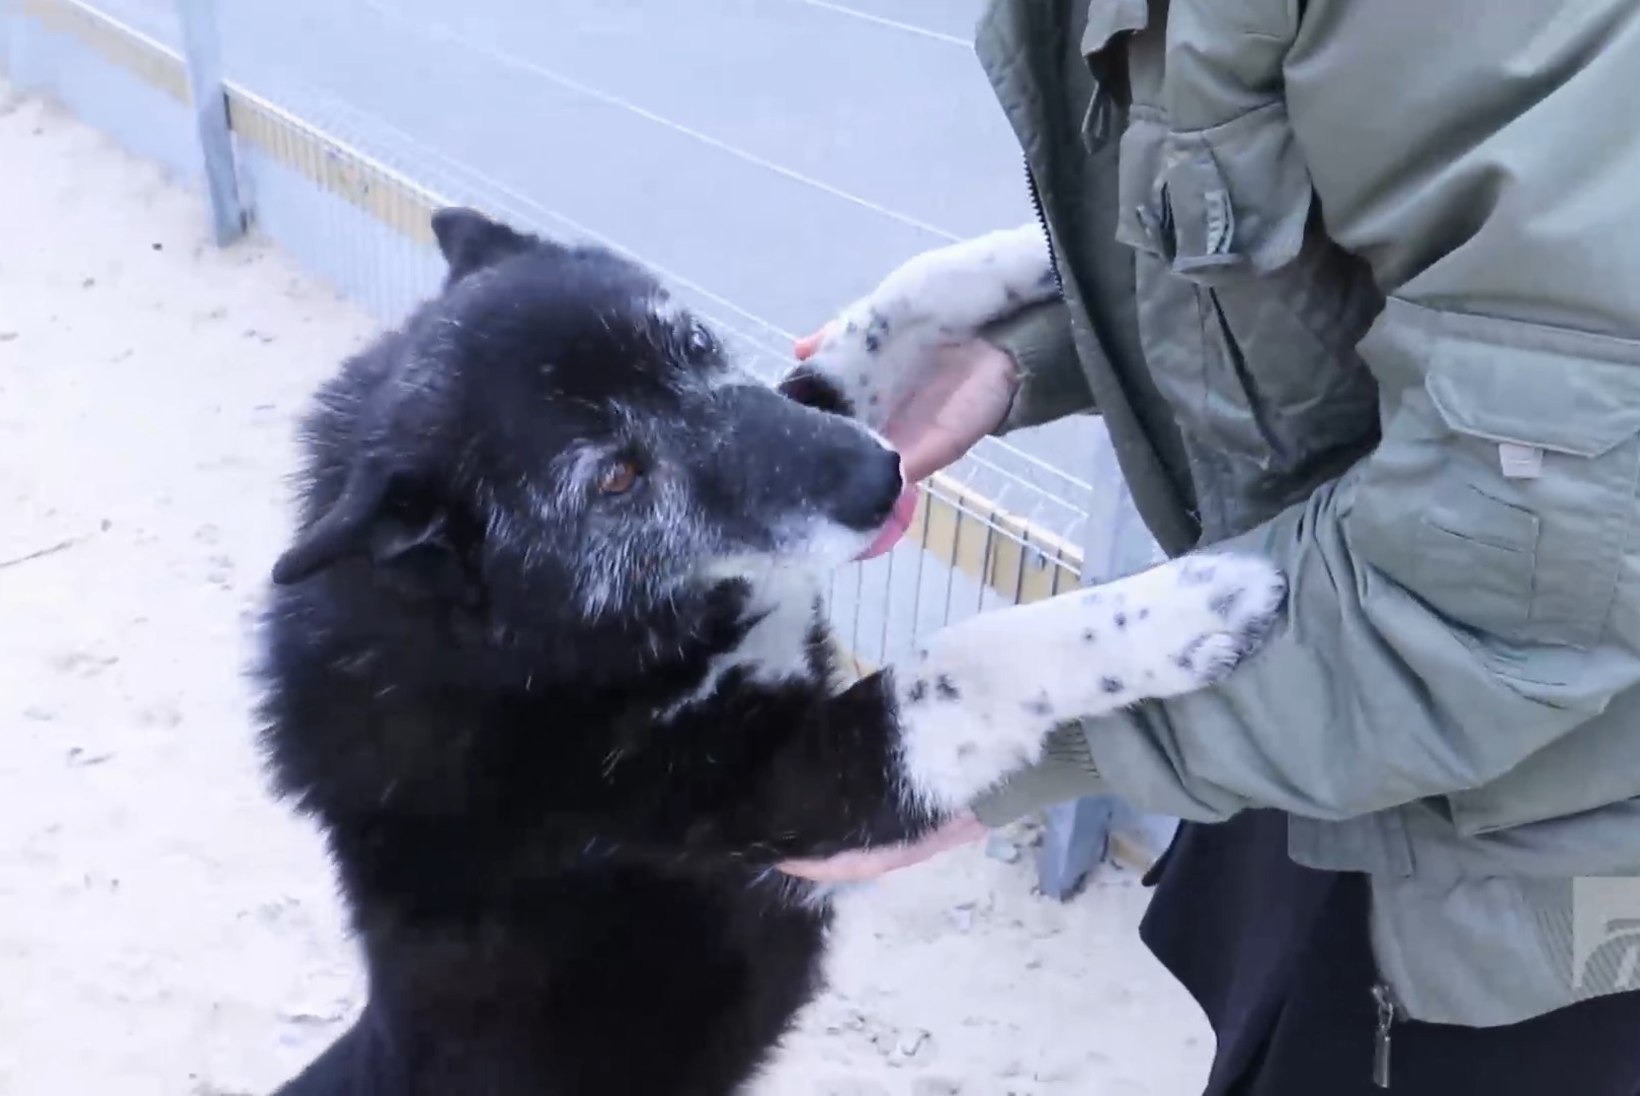 ÕHTULEHE VIDEO | Koduotsija: laikalaadne koer Venta otsib armastavat inimest, kes tema pehmet karva paitaks